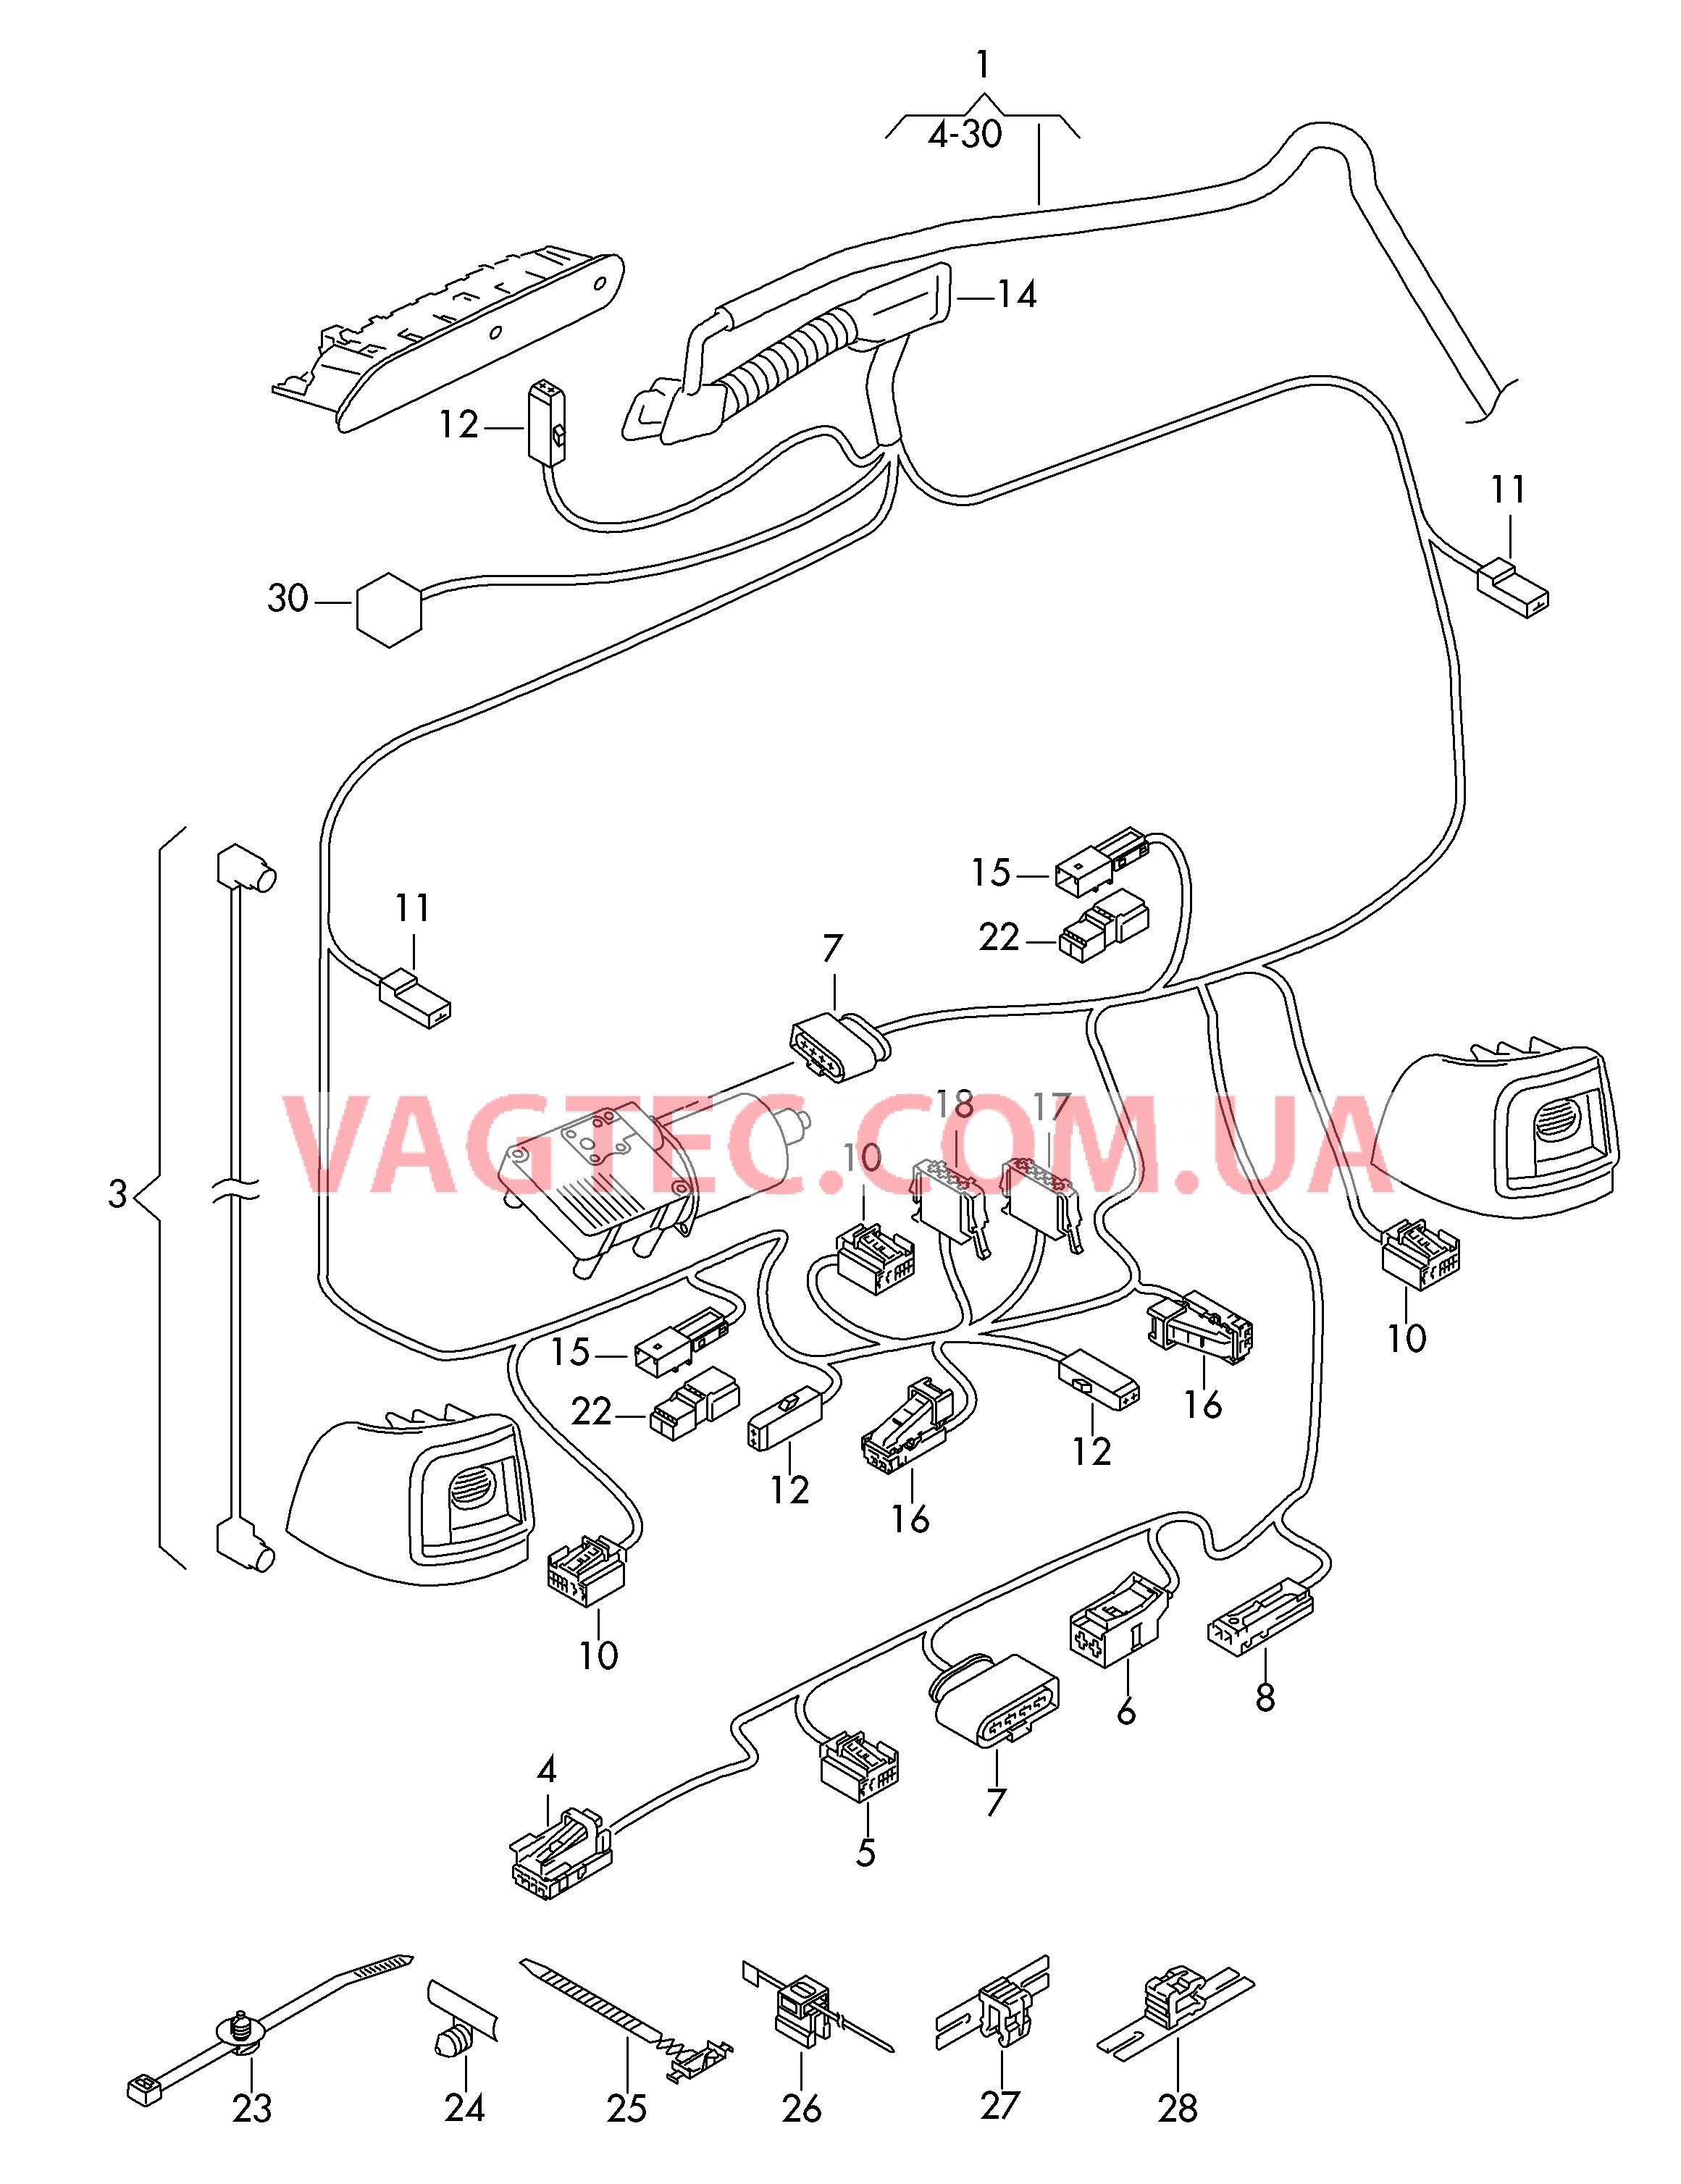 Отрезок жгута для крышки багажного отсека ***  Cм. схему электрообор.**  для SEAT Alhambra 2018